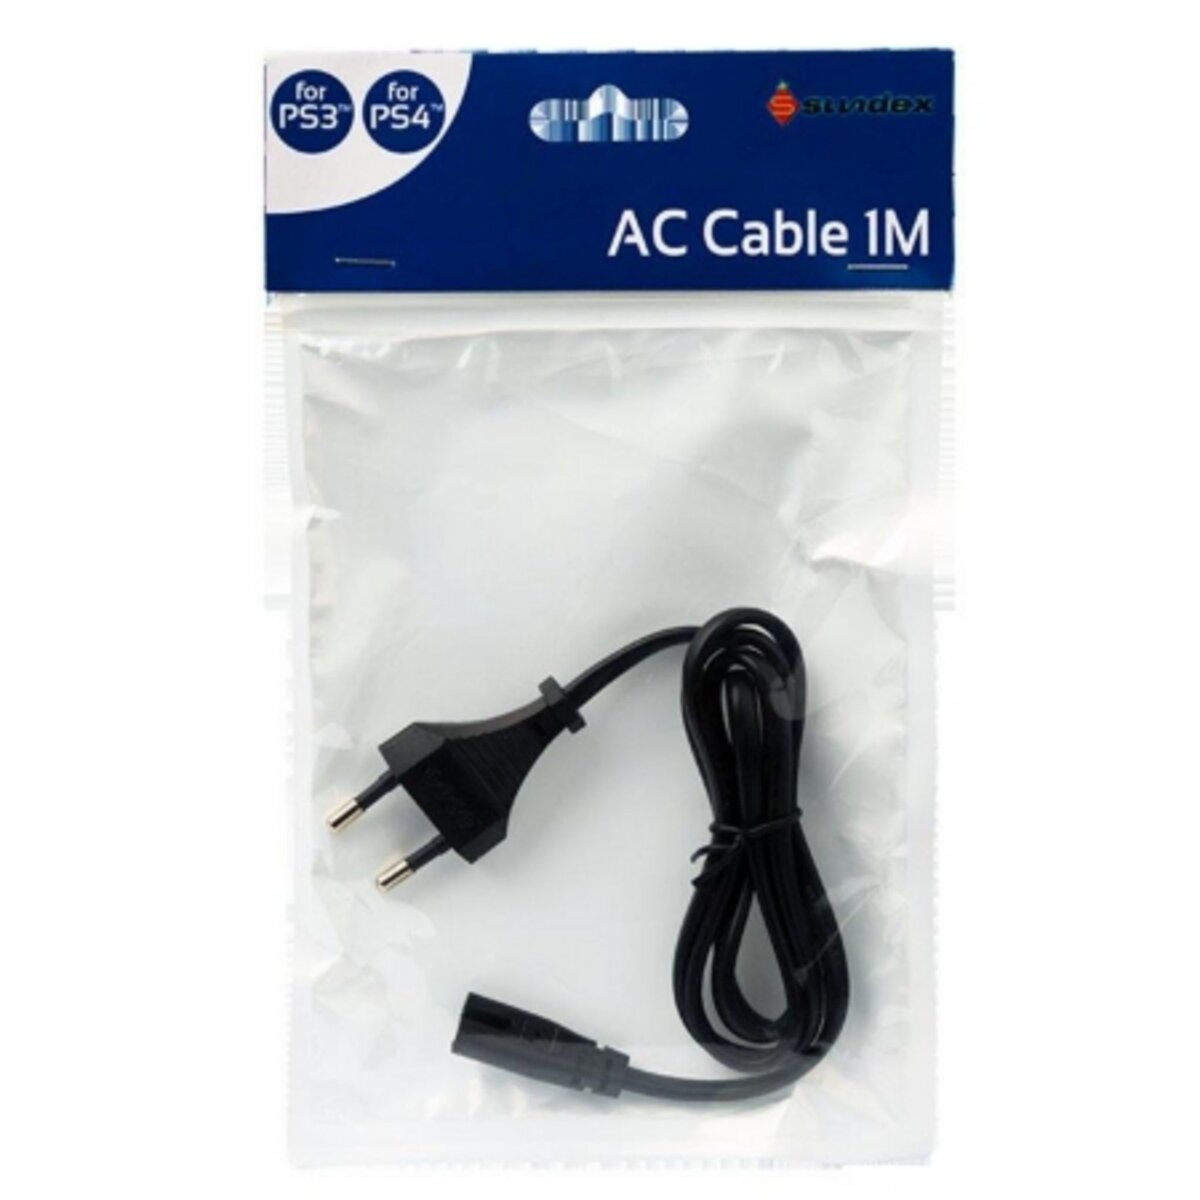 Cable d'alimentation (1m) pour PS3 et PS4